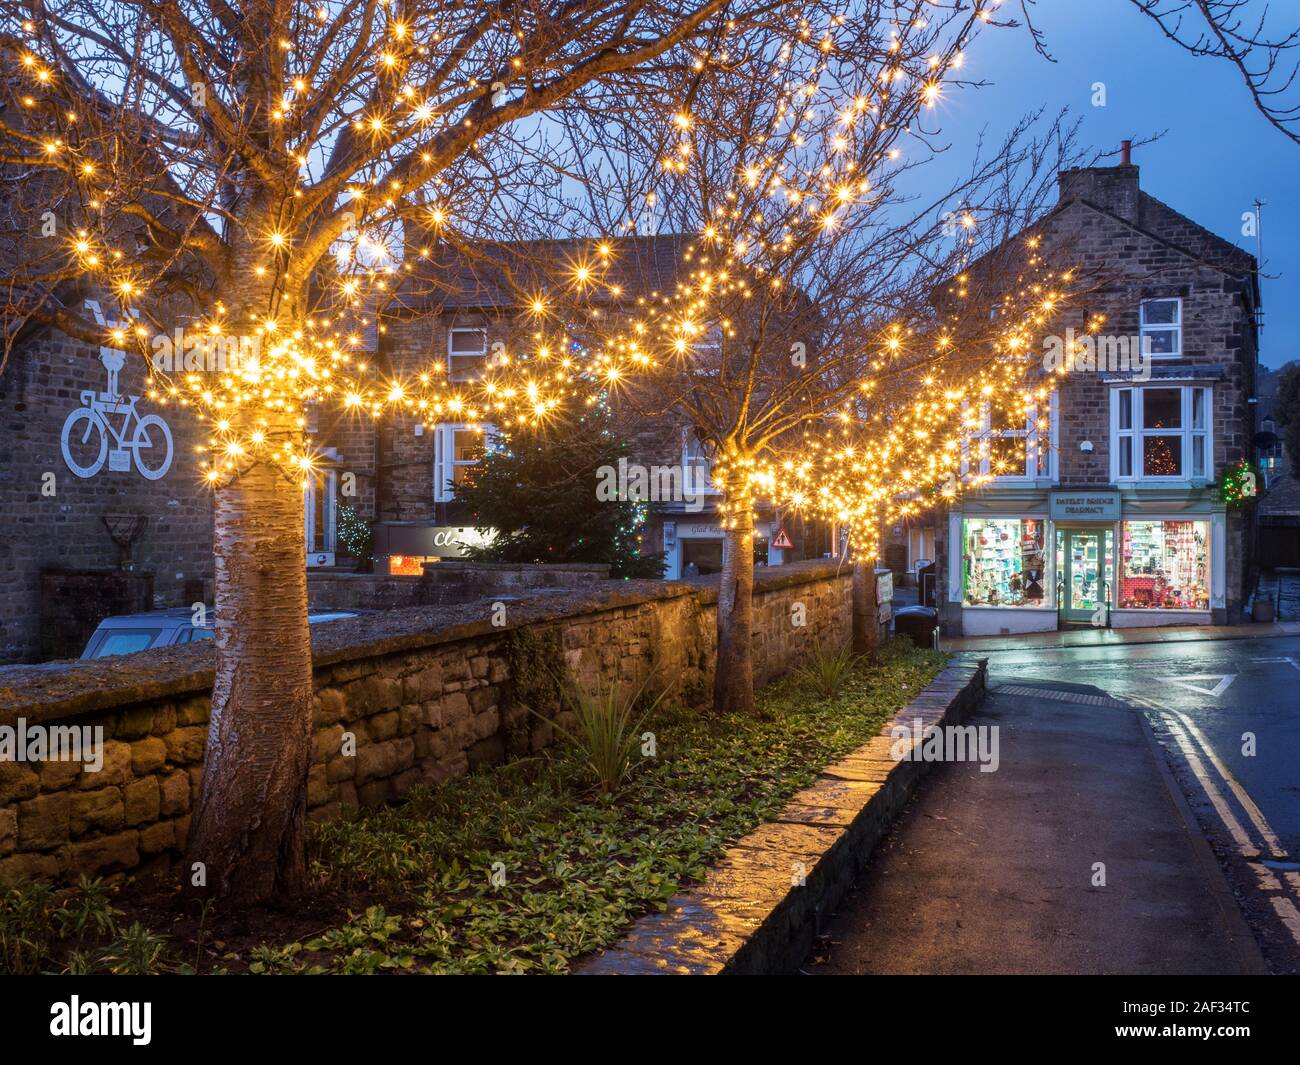 White fairy lights dans les arbres à Noël Campsites Canet-en-Roussillon à l'AONB Nidderdale North Yorkshire Angleterre Banque D'Images